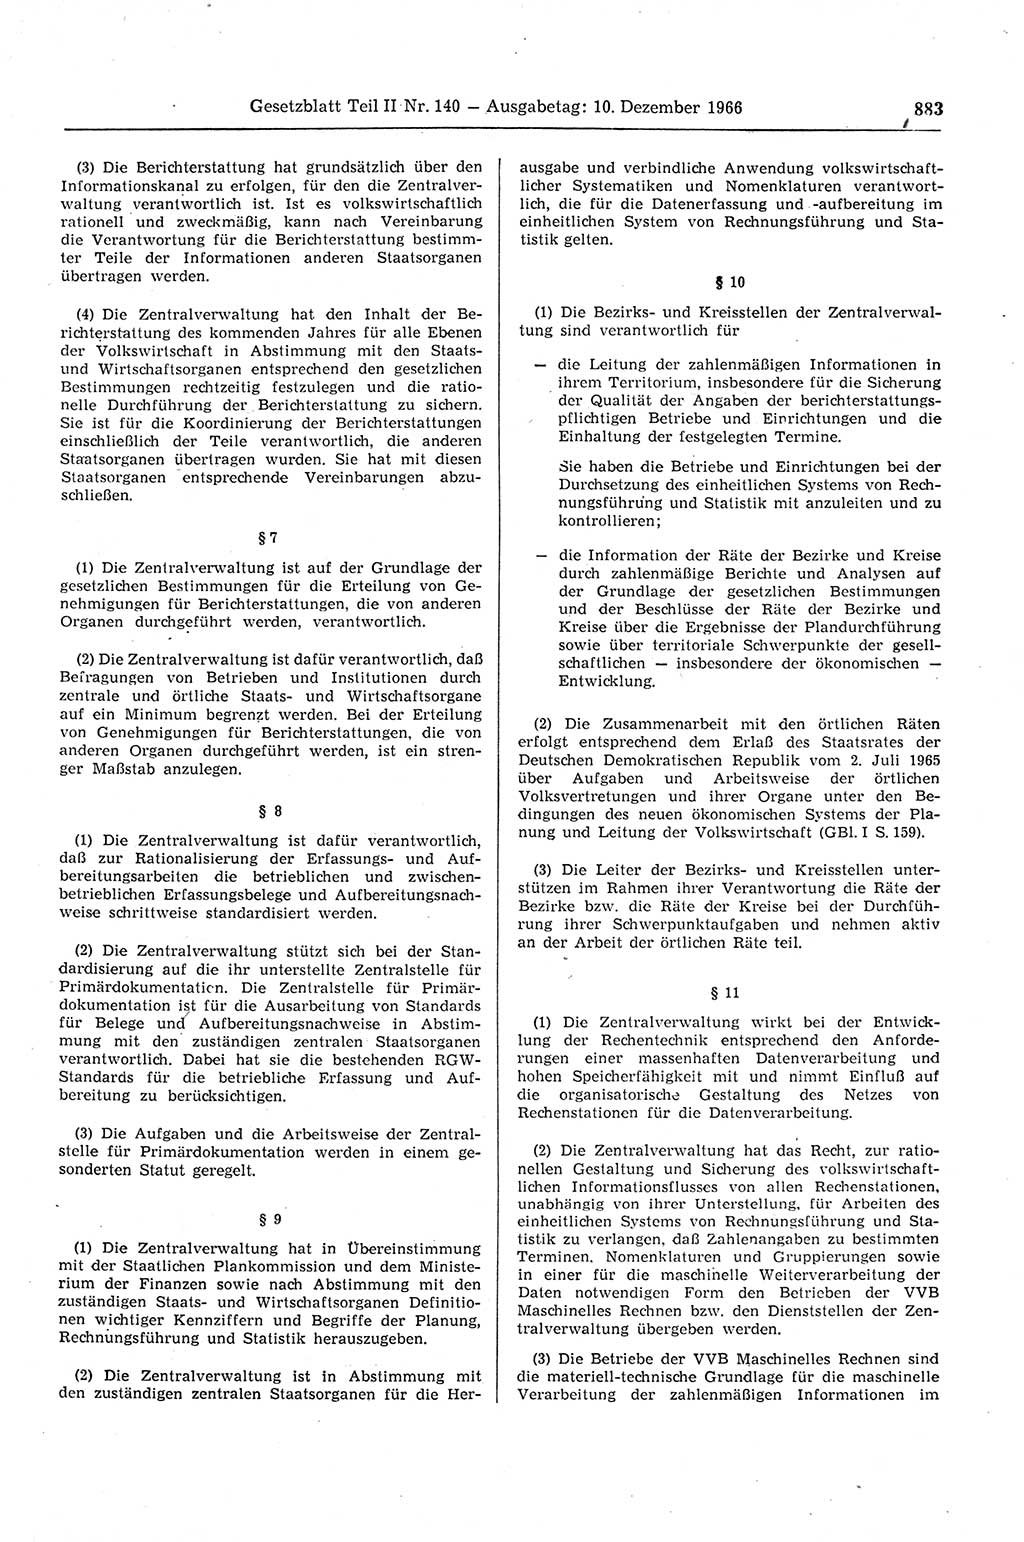 Gesetzblatt (GBl.) der Deutschen Demokratischen Republik (DDR) Teil ⅠⅠ 1966, Seite 883 (GBl. DDR ⅠⅠ 1966, S. 883)